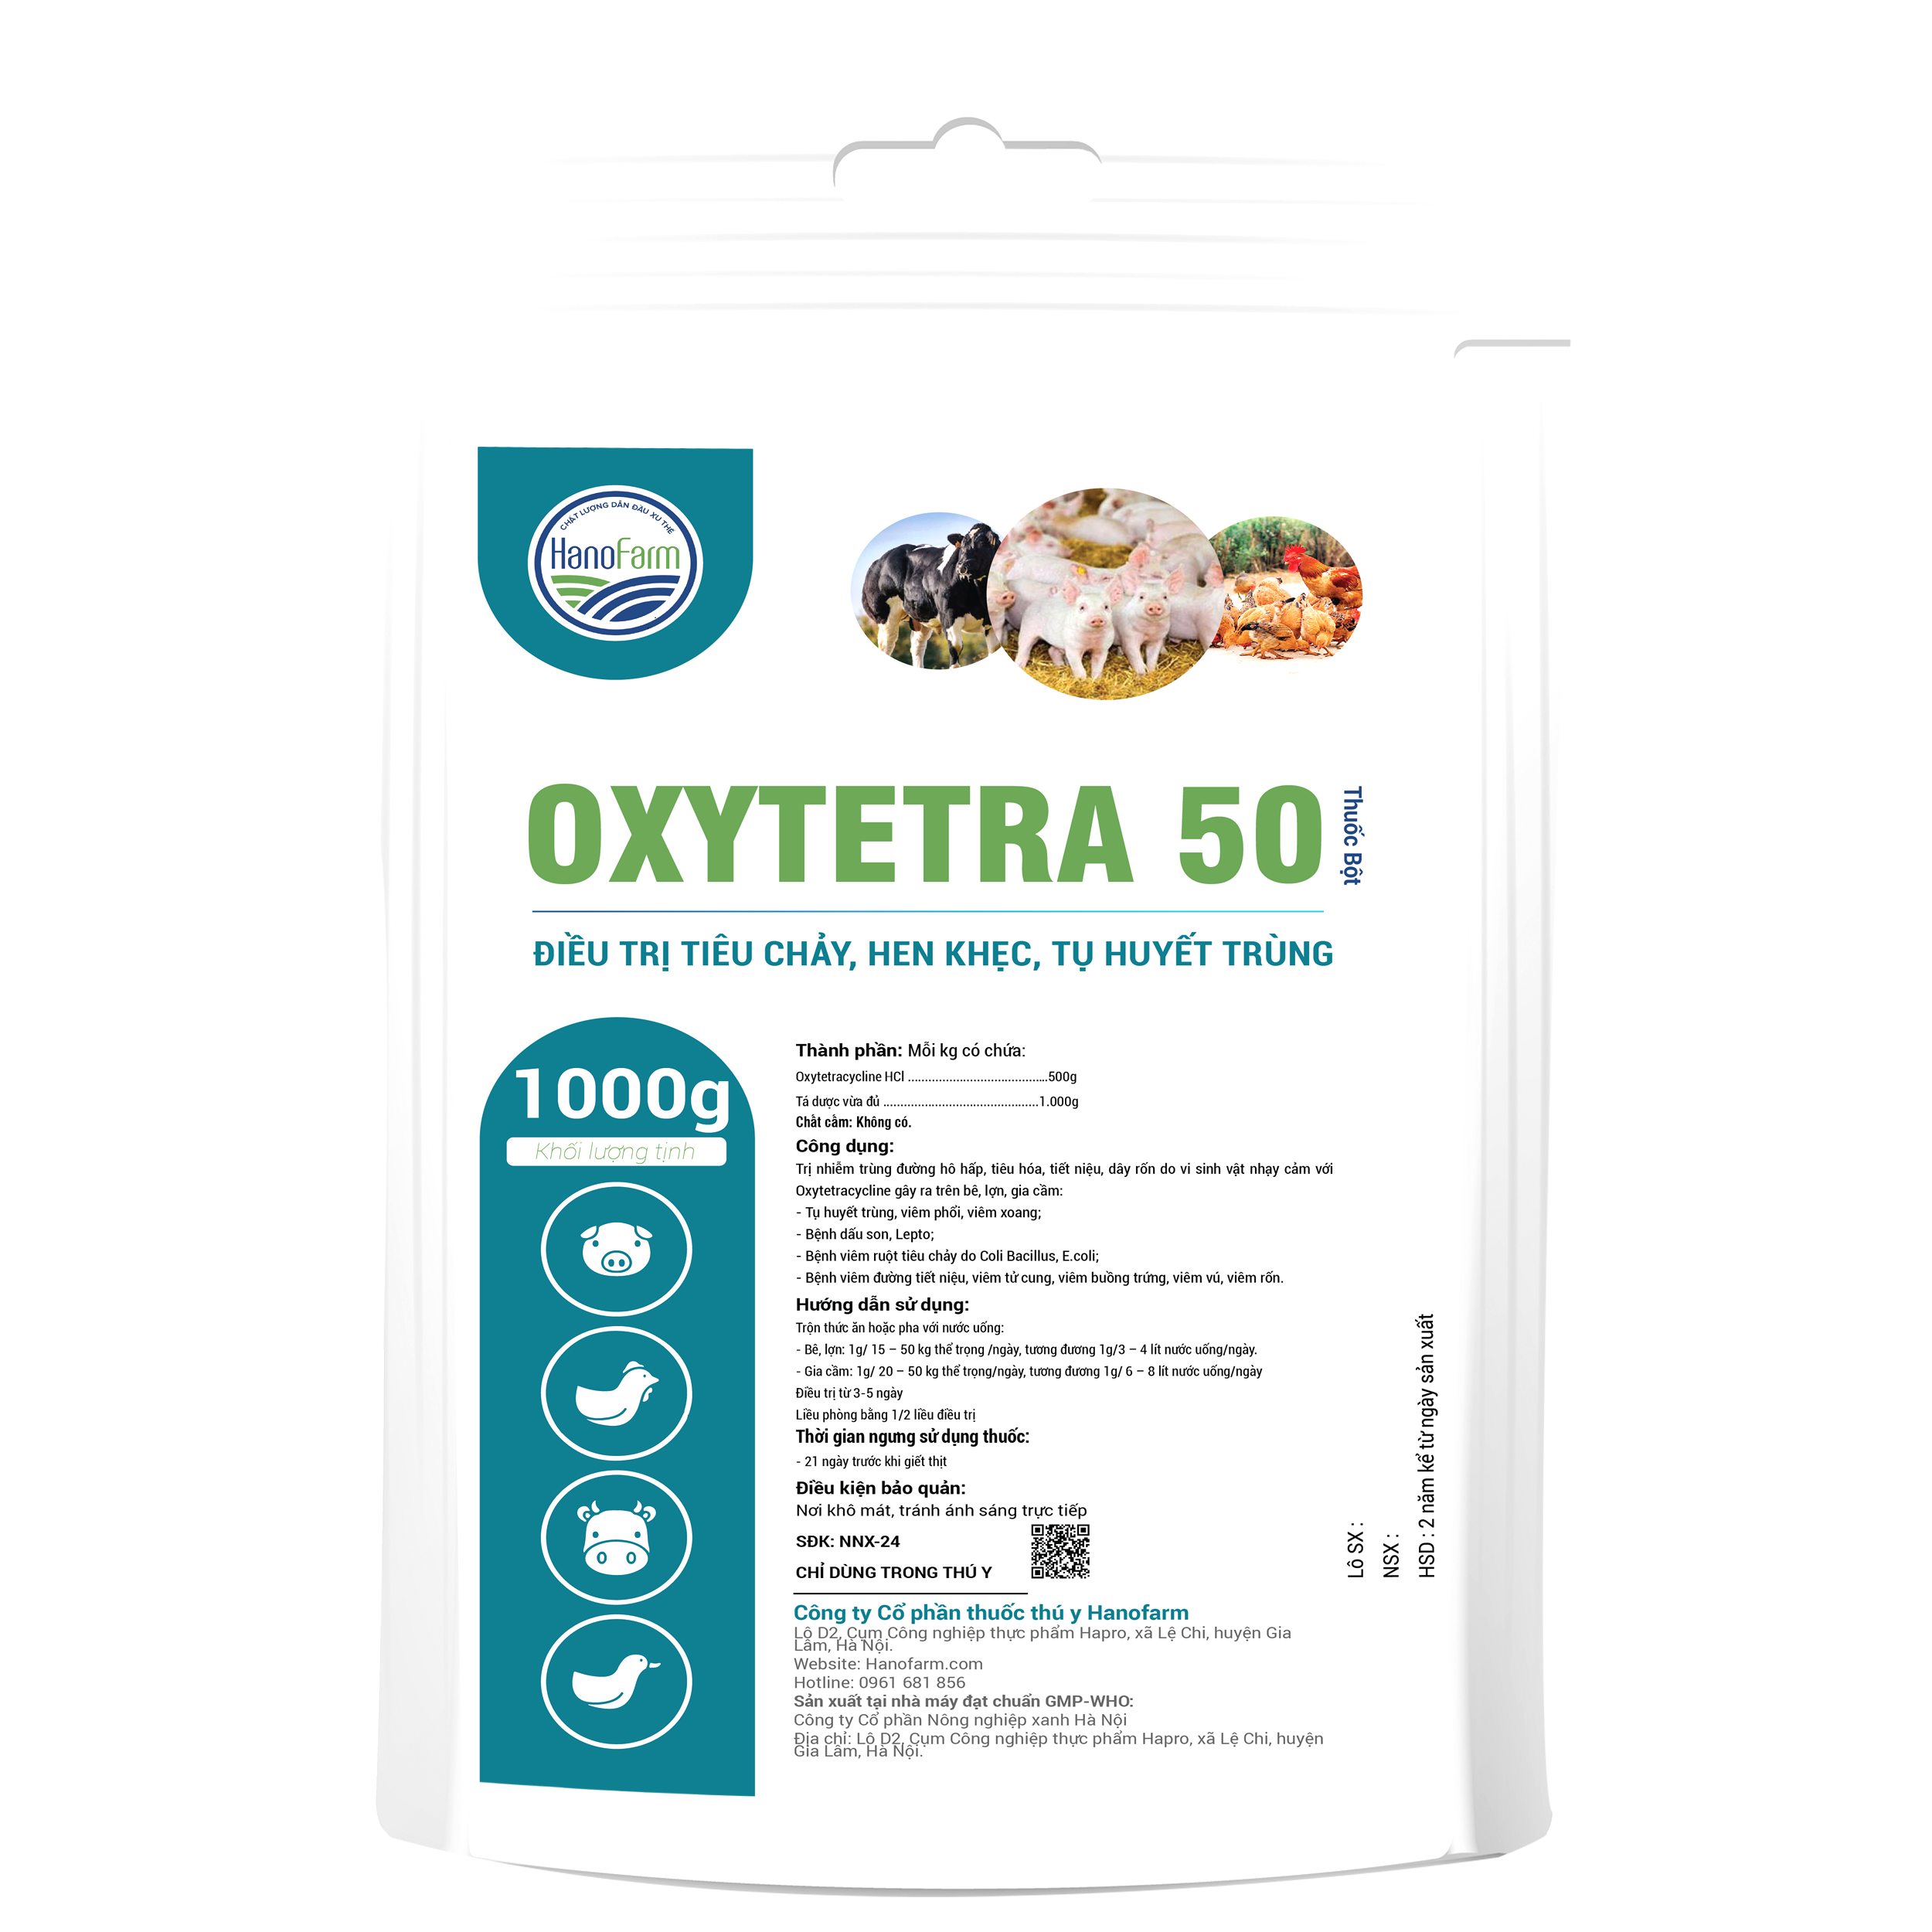 oxytetra 50